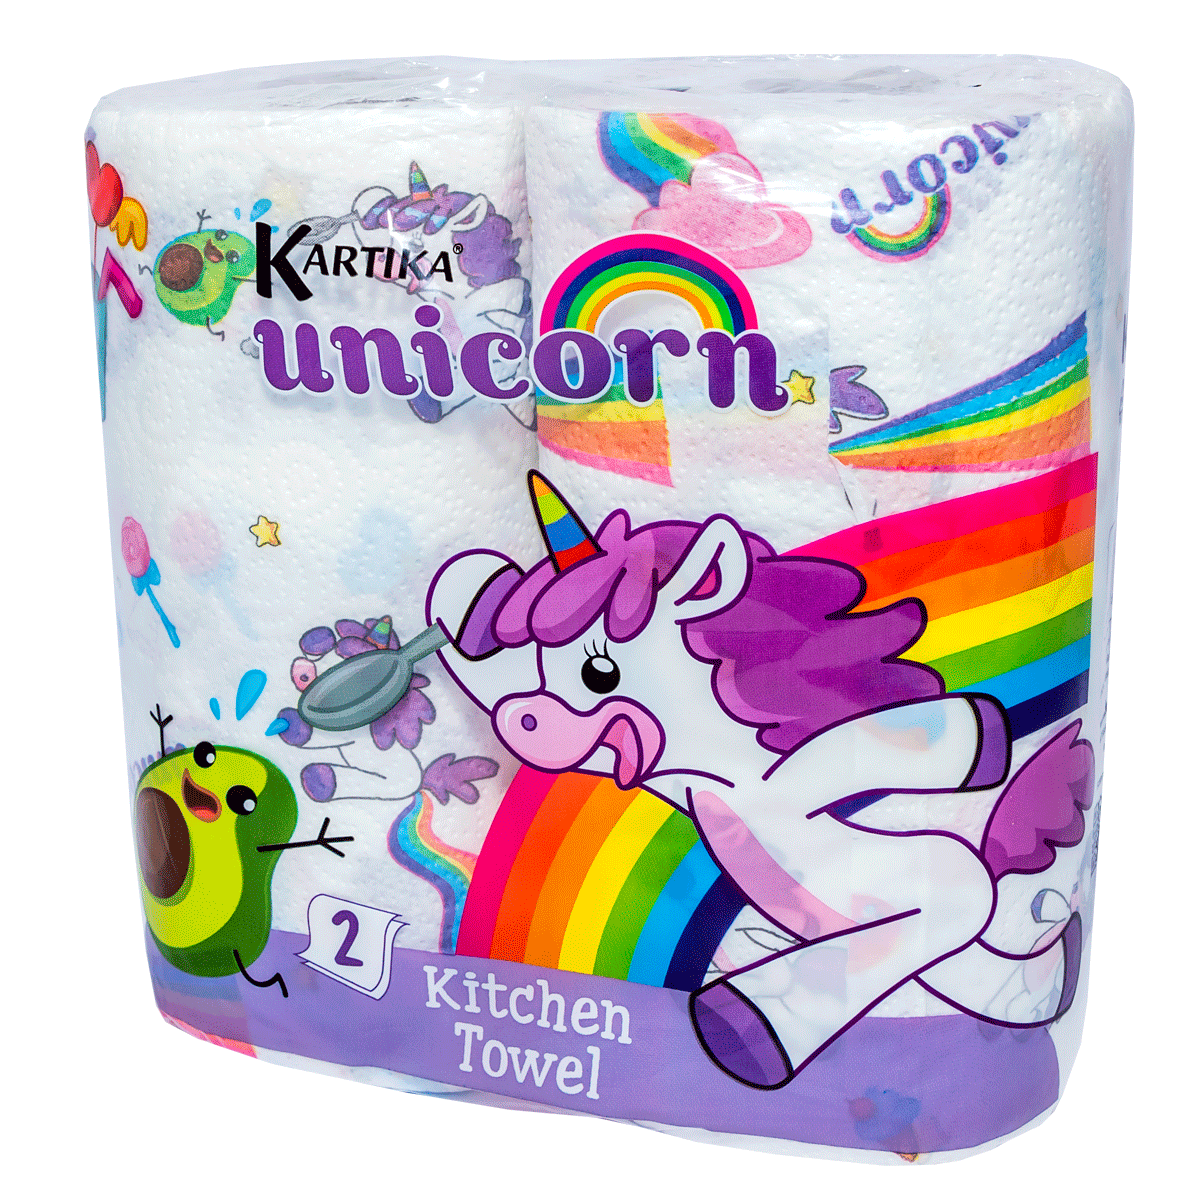 Kitchen paper towels  Kartika unicorn 6989 